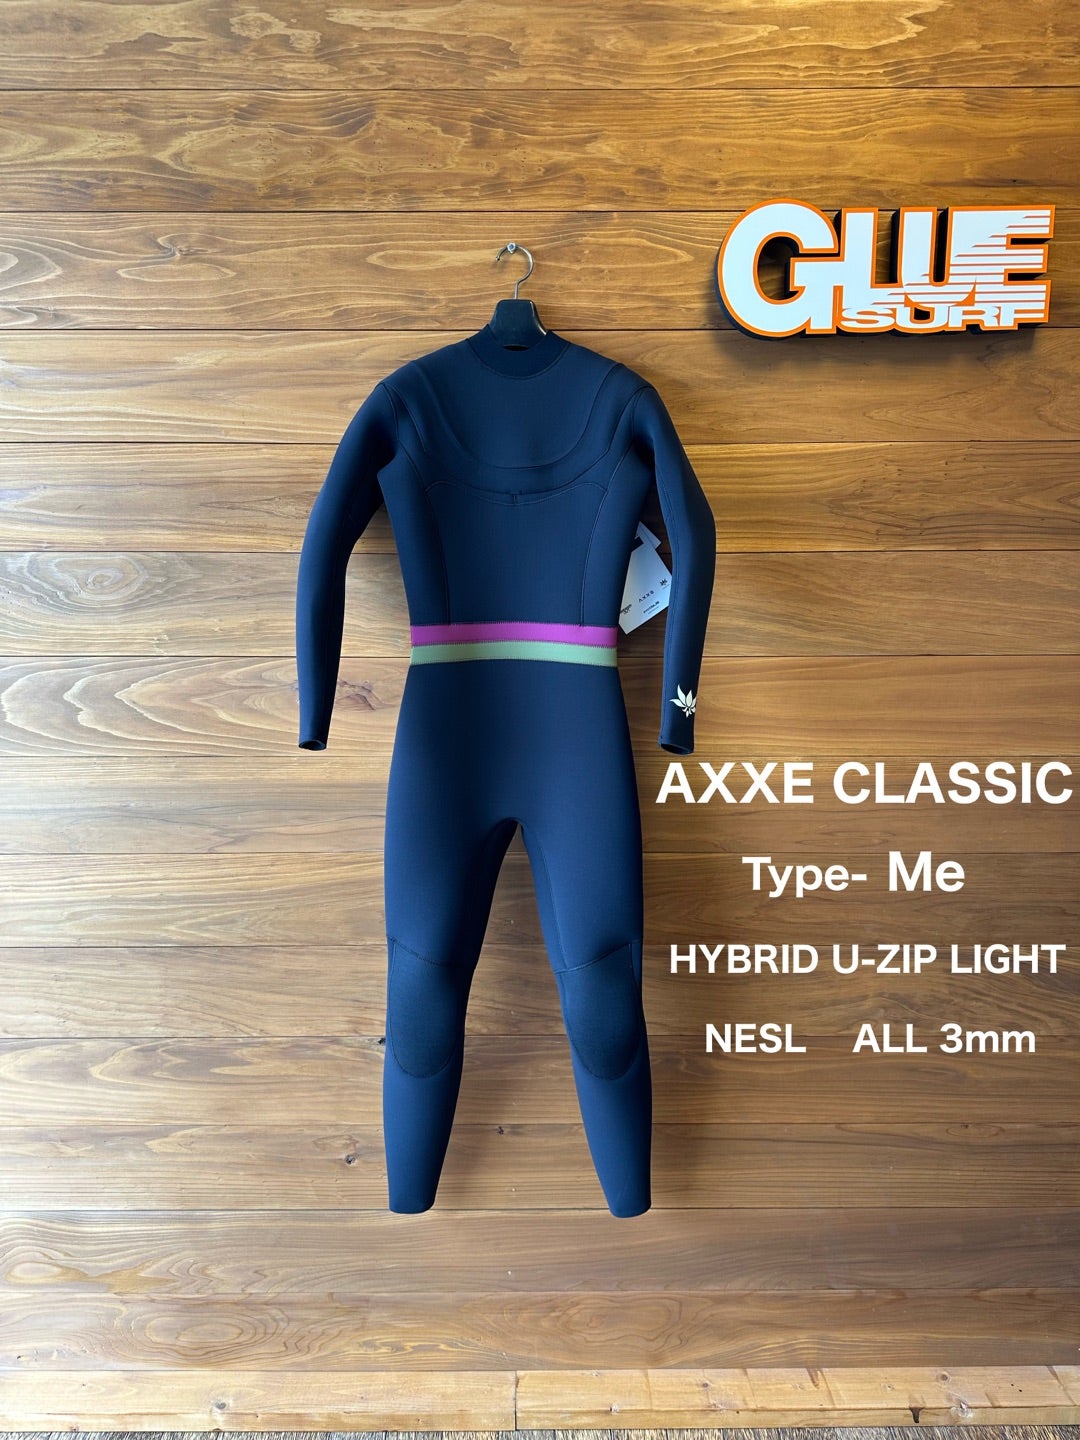 AXXE CLASSICオーダーウェットスーツ！ | グルーサーフブログ